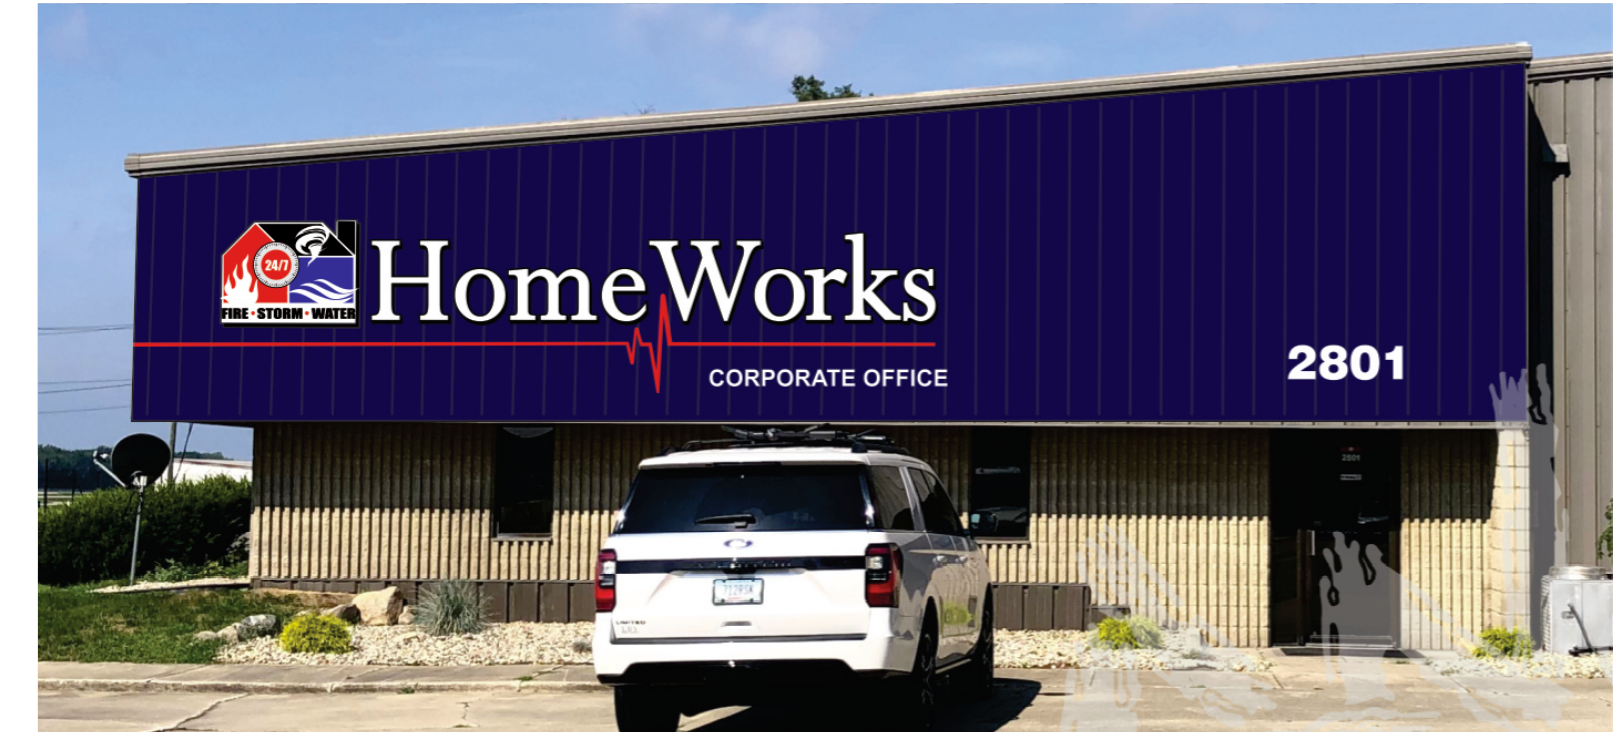 HomeWorks Remodeling, LLC